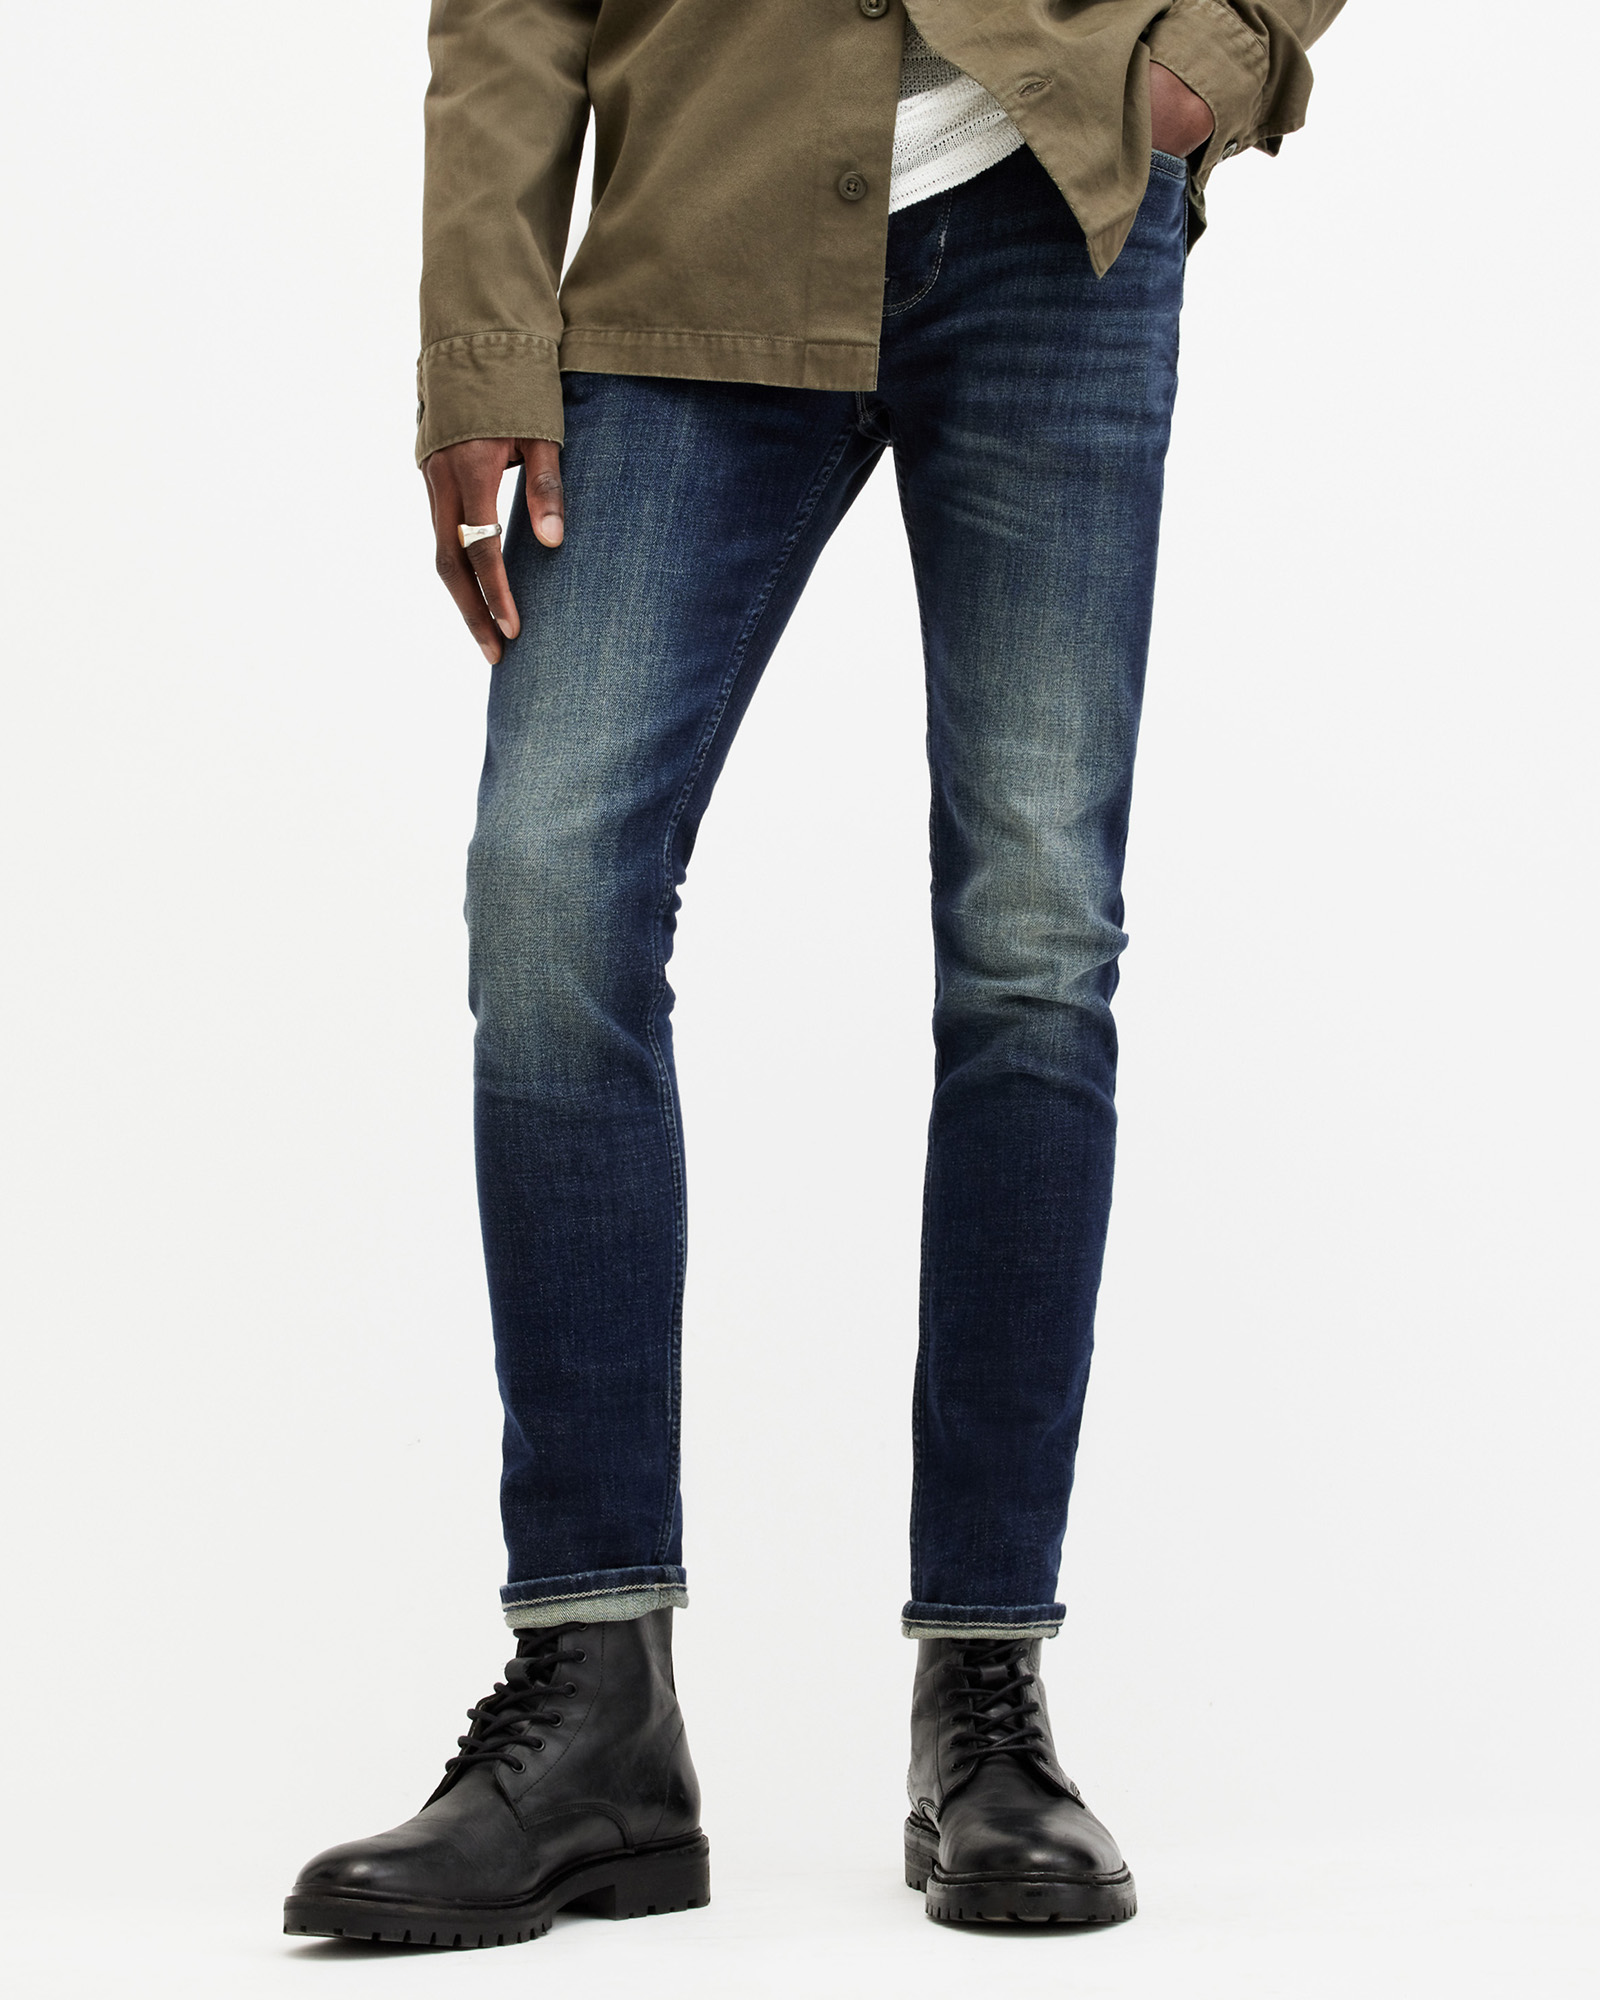 AllSaints Men's Cotton Traditional Cigarette Skinny Jeans, Blue, Size: 32/L30